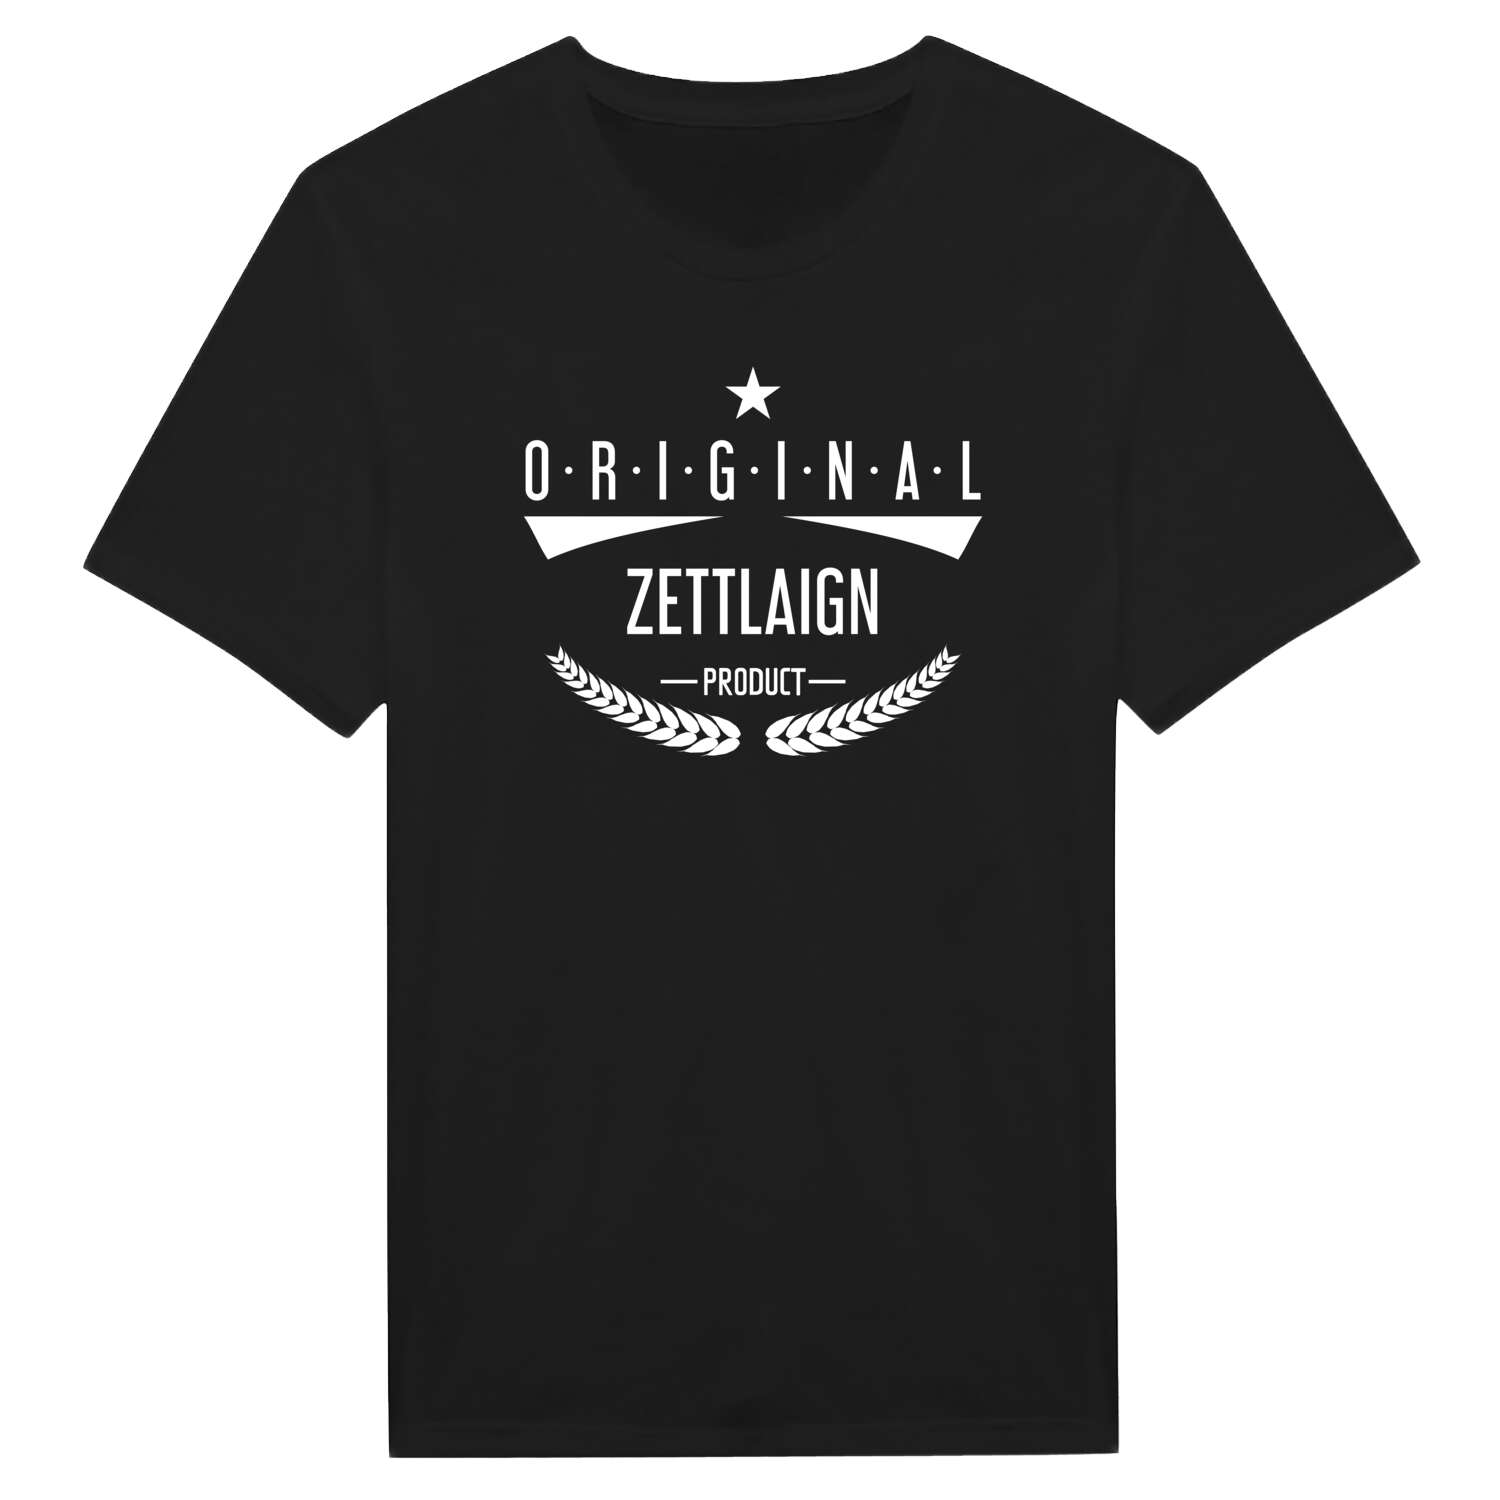 Zettlaign T-Shirt »Original Product«